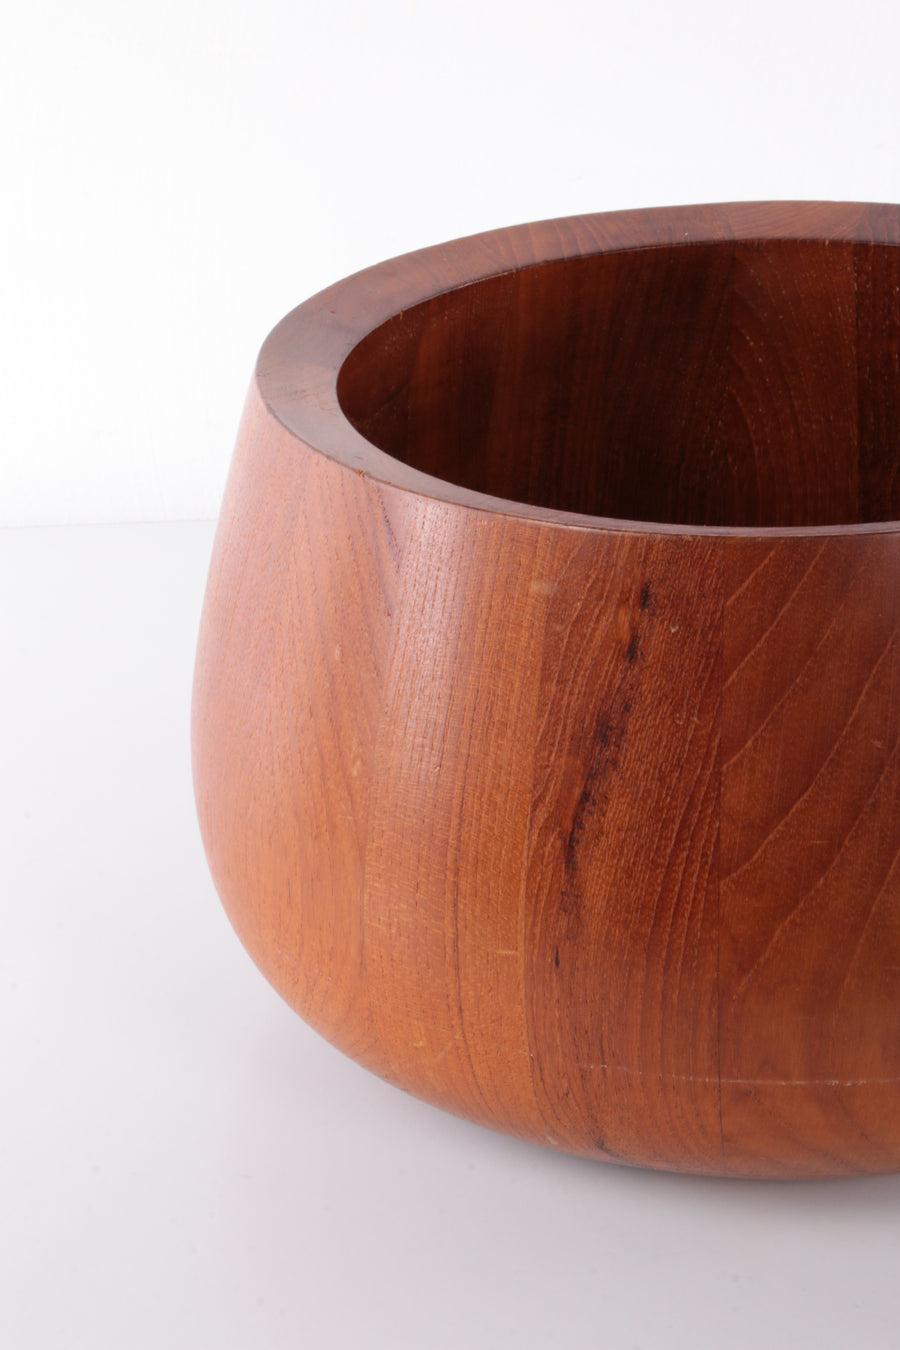 Danish Teak Wooden Bowl & Salad Servers by Jens Quistgaard Made in Dansk Design